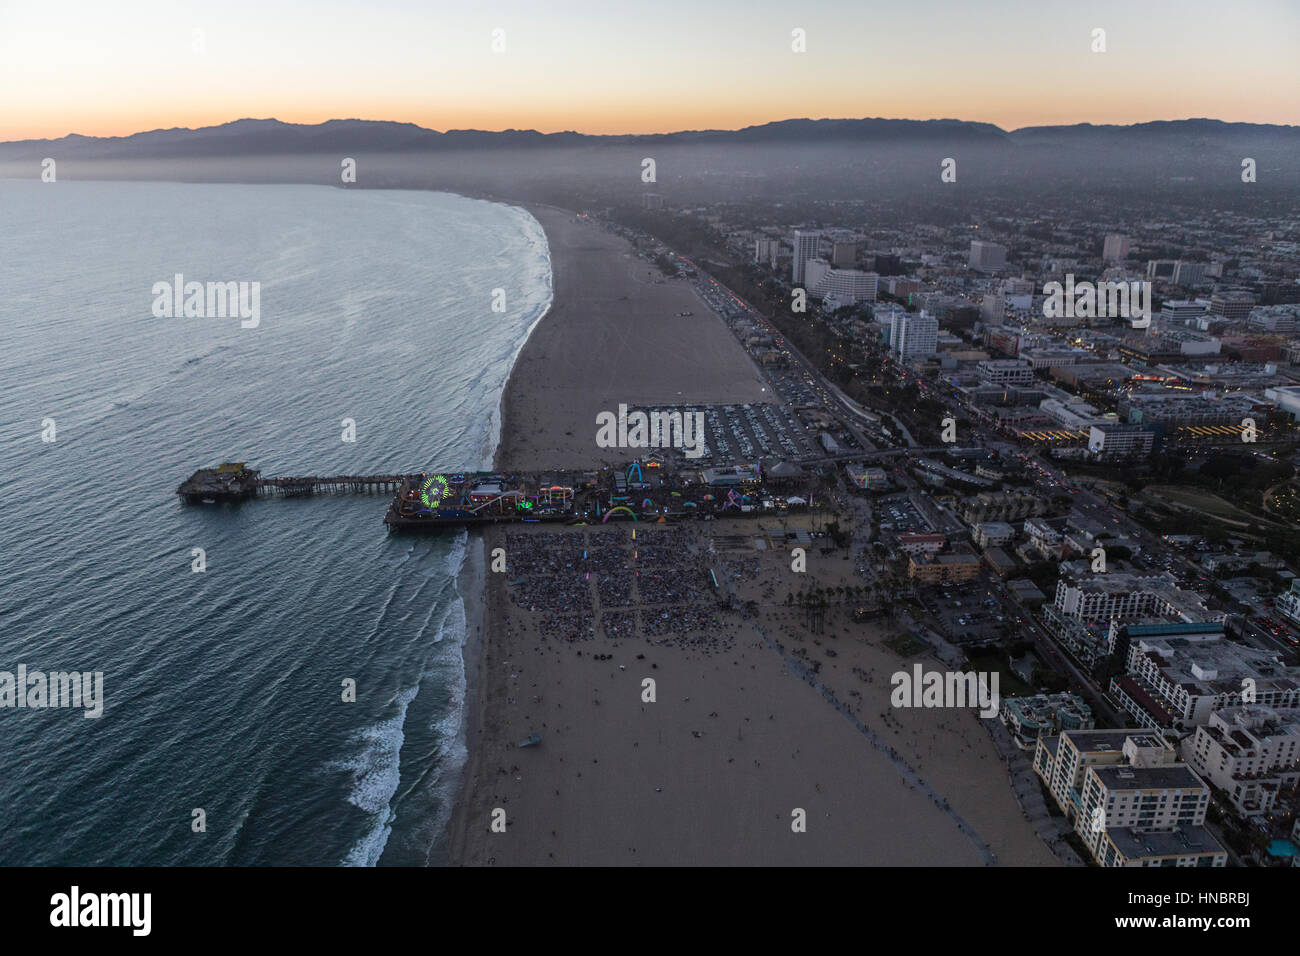 Santa Monica, Californie, USA - 21 juillet 2016 : Après le coucher du soleil Vue aérienne de la foule à la plage et de la jetée de Santa Monica. Banque D'Images